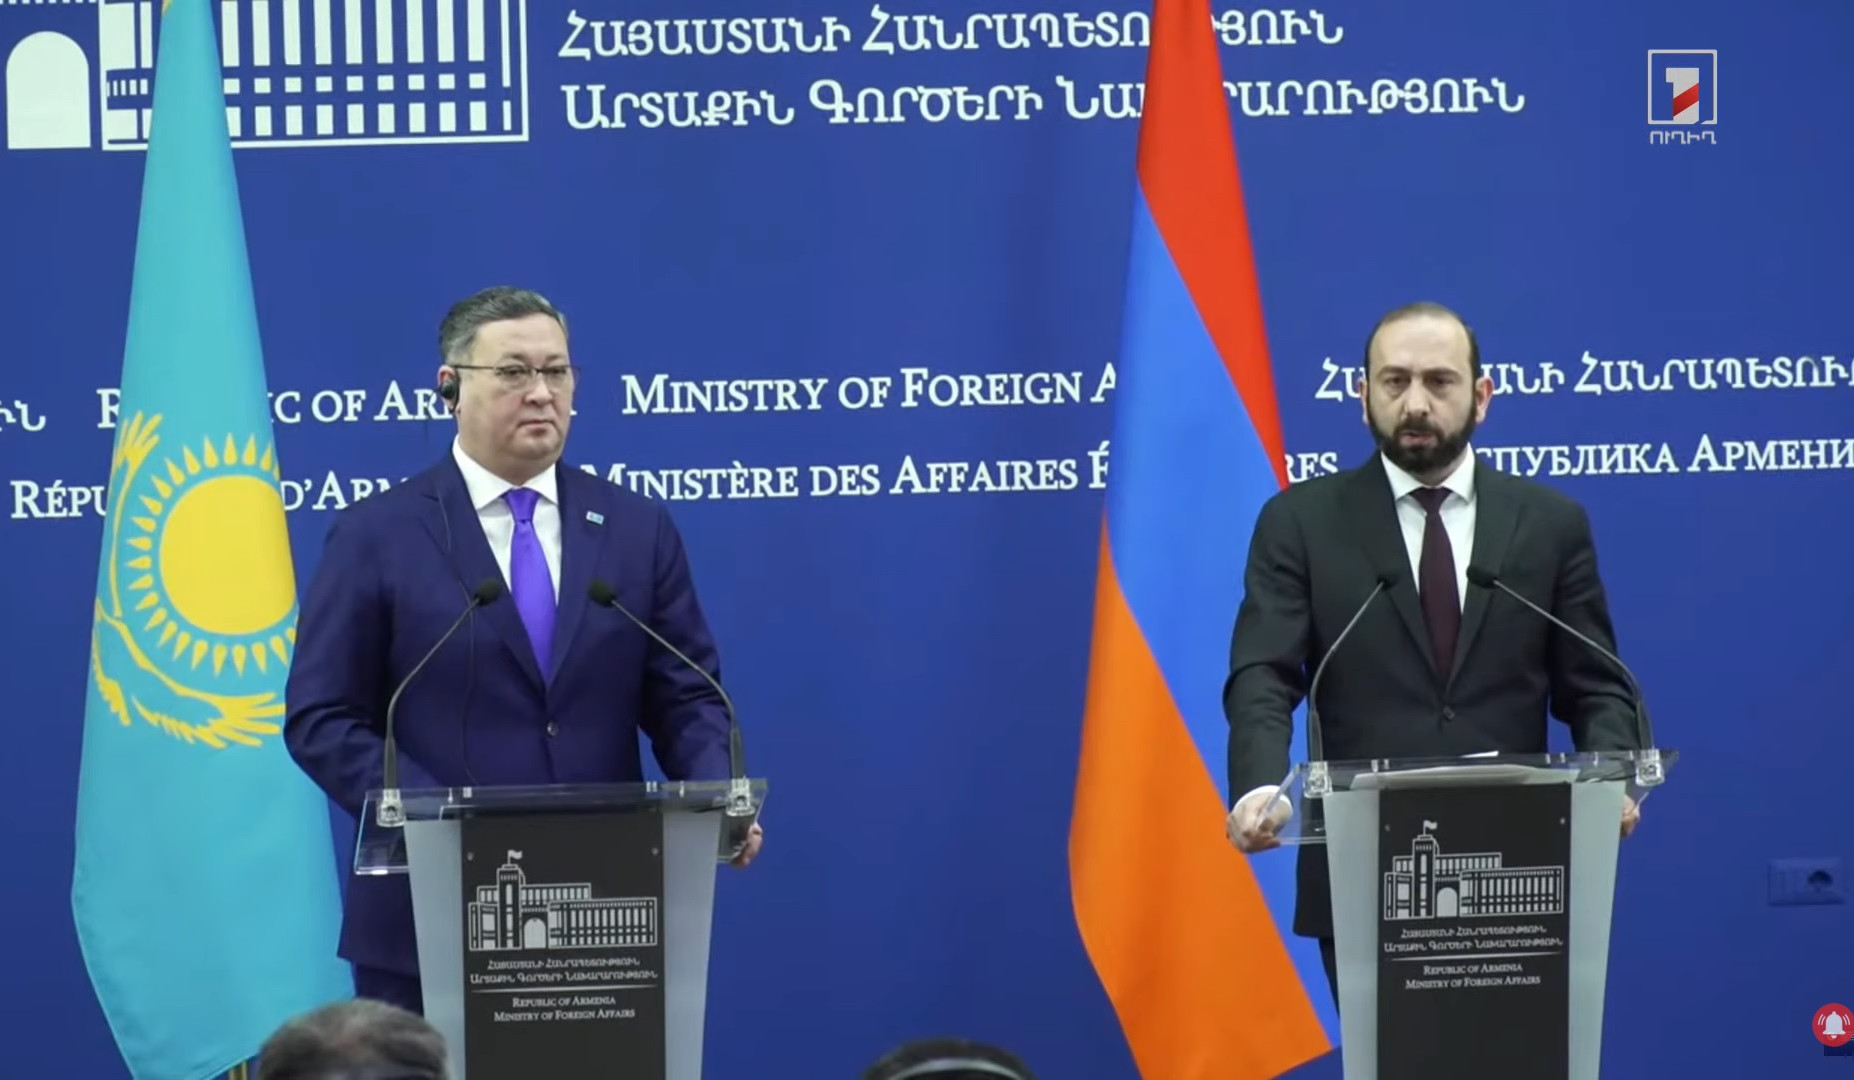 Ermənistan və Qazaxıstan üçün yeni imkanların kəşfi vacibdir: Mirzoyan